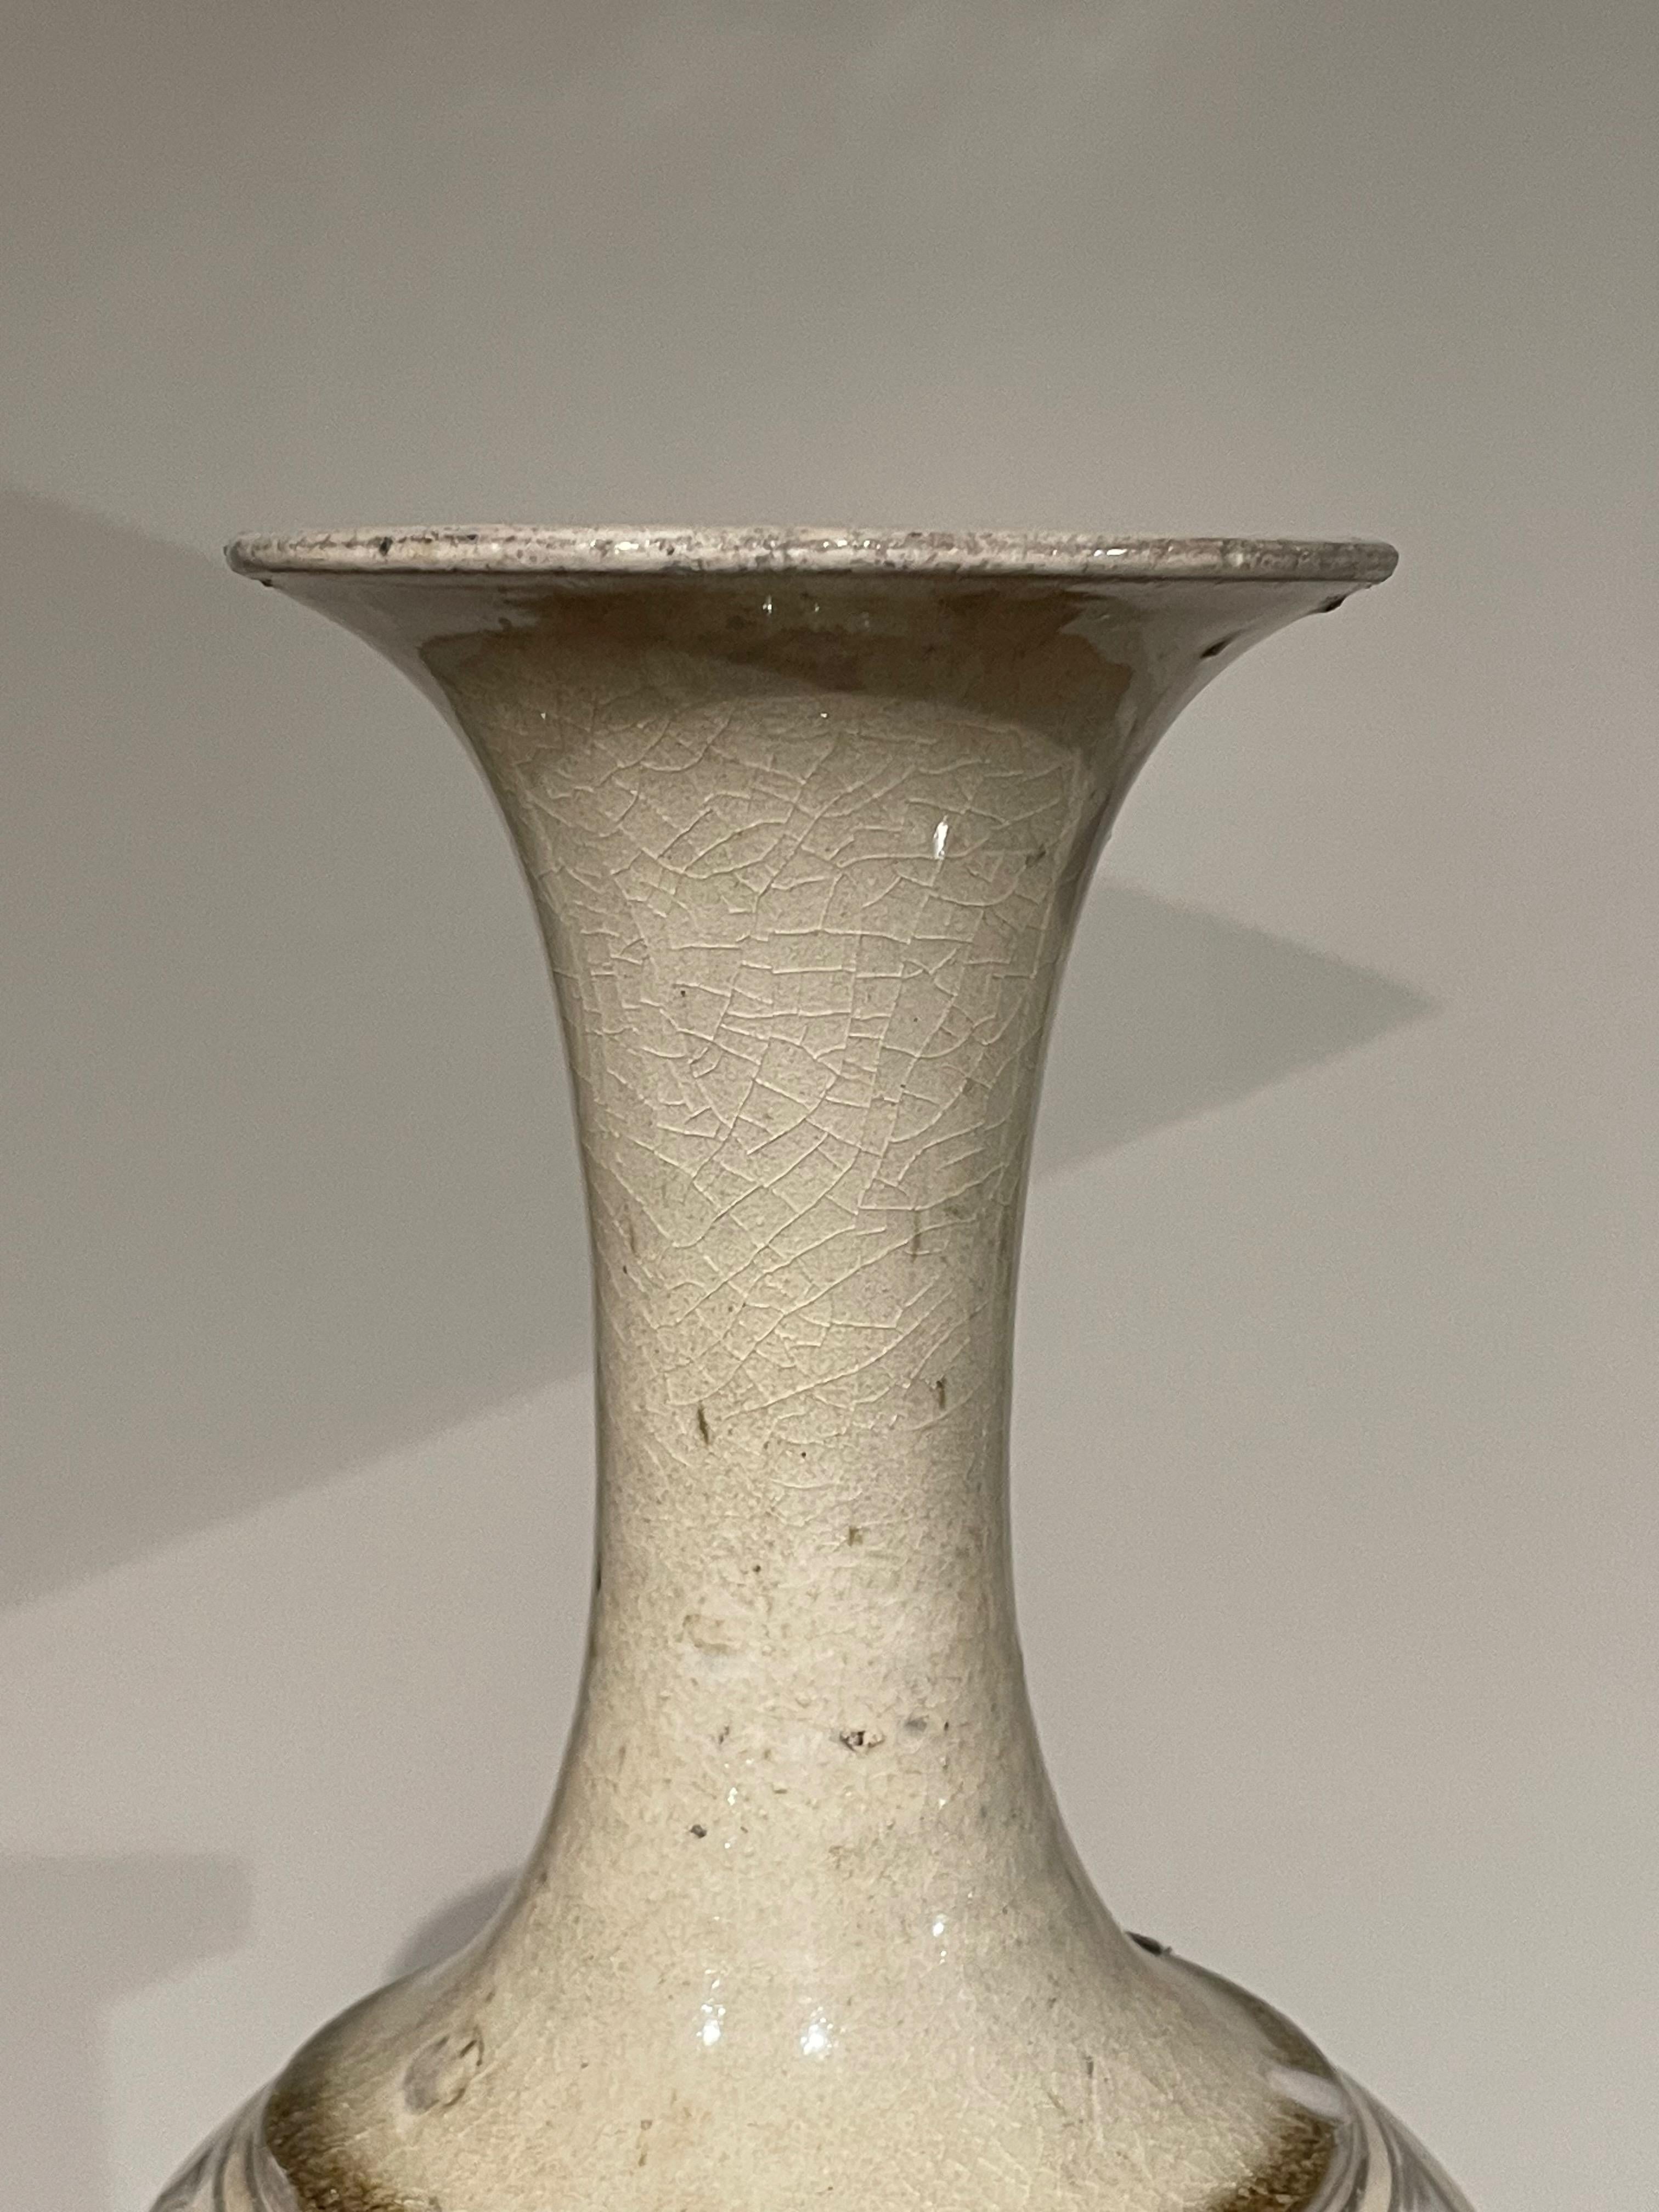 Vase contemporain chinois à motif crème.
Forme allongée du cou.
Bandes horizontales de motifs décoratifs circulaires.
Deux disponibles.
Collectional de six avec différentes formes disponibles.
